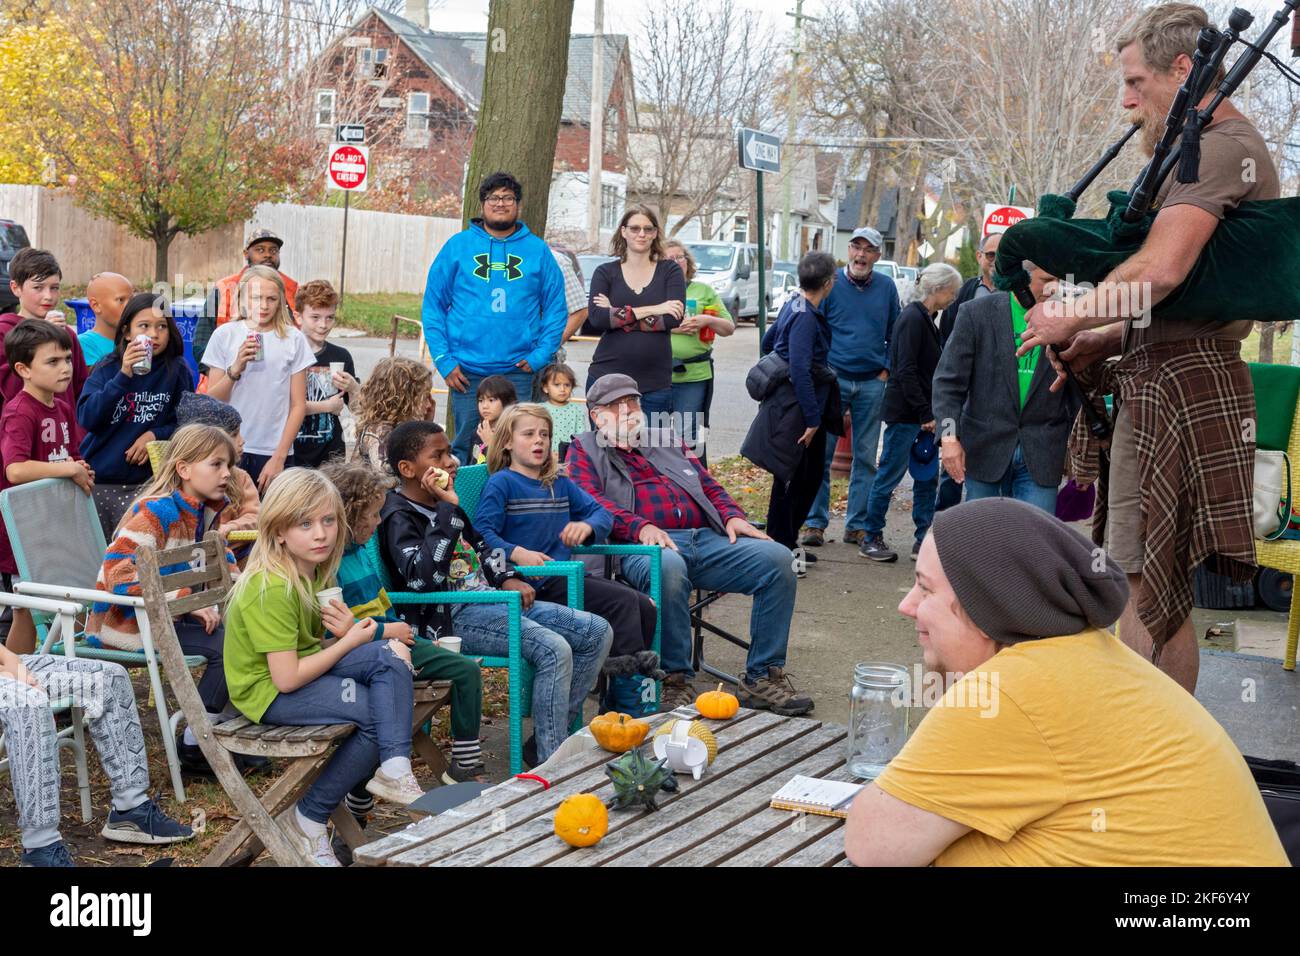 Detroit, Michigan - Jack VanDyke spielt Dudelsäcke während einer Talentshow auf einem Herbstfestival auf der Nahost-Seite von Detroit. Stockfoto